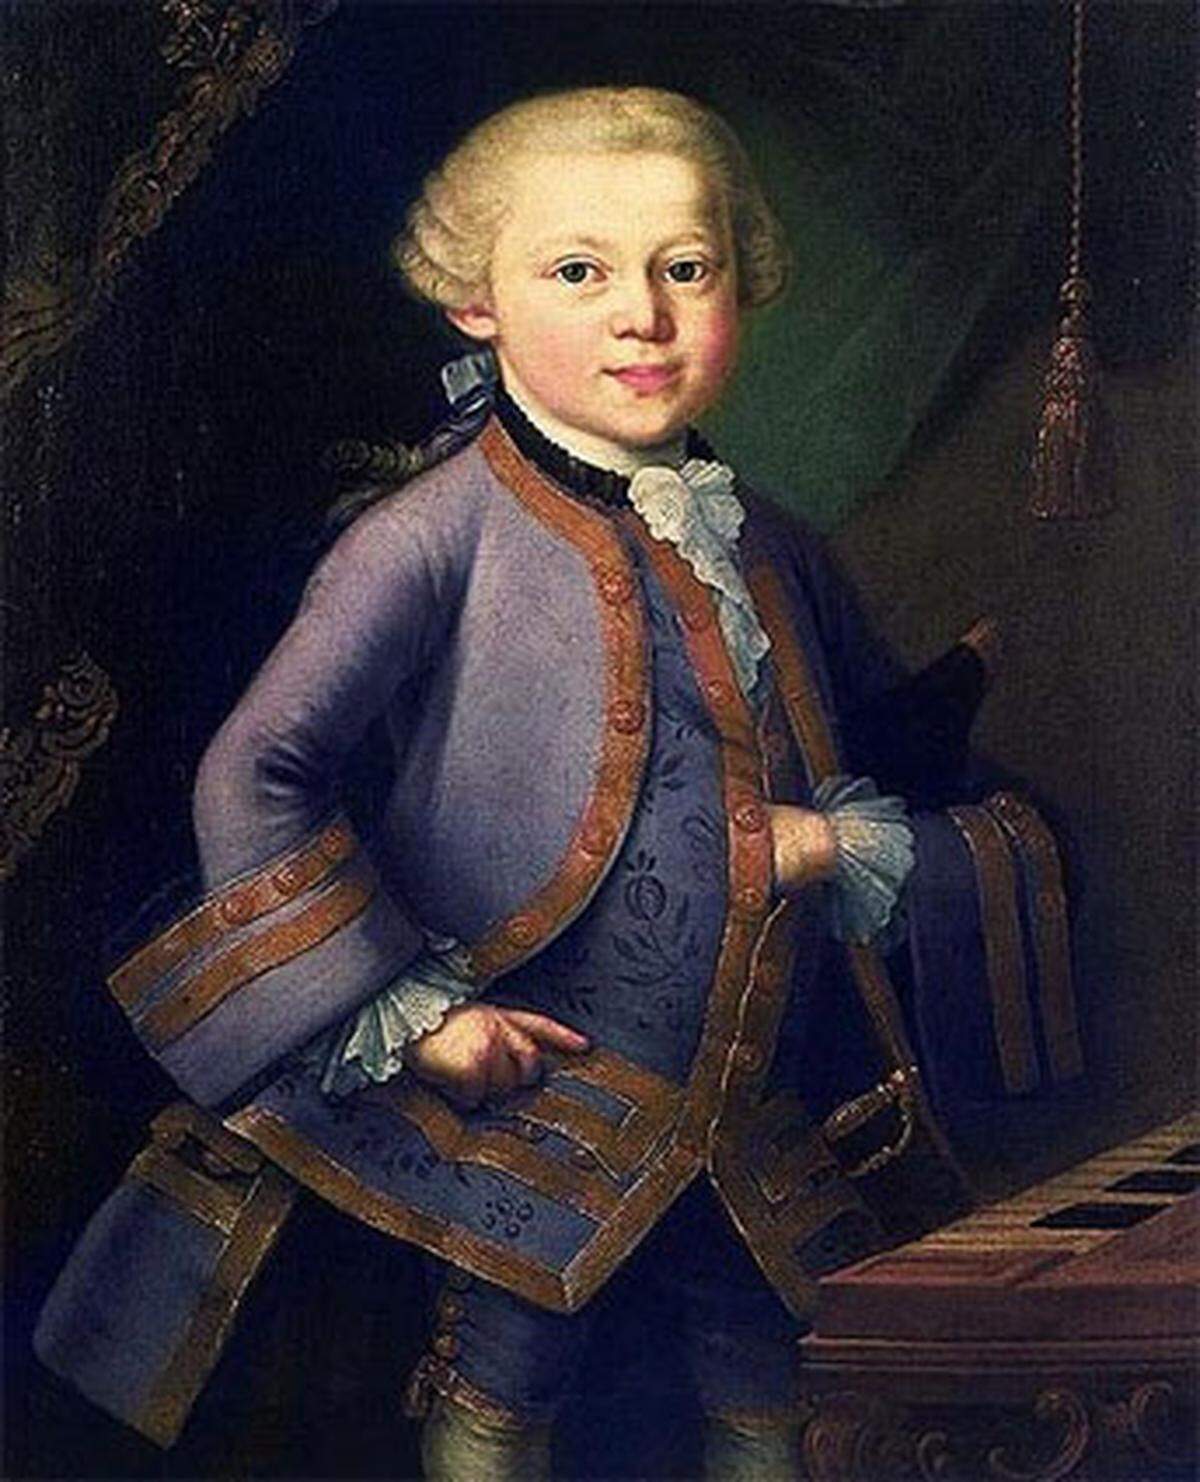 "Wolferl" ist der Prototy des Wunderkindes. Mit fünf Jahren begann er zu komponieren, mit sechs spielte er vor Kaiserin Maria Theresia. Die er - seinem Alter entsprechend - auch gleich damit bezirzte, dass er ihr auf den Schoß kletterte und einen Kuß gab.